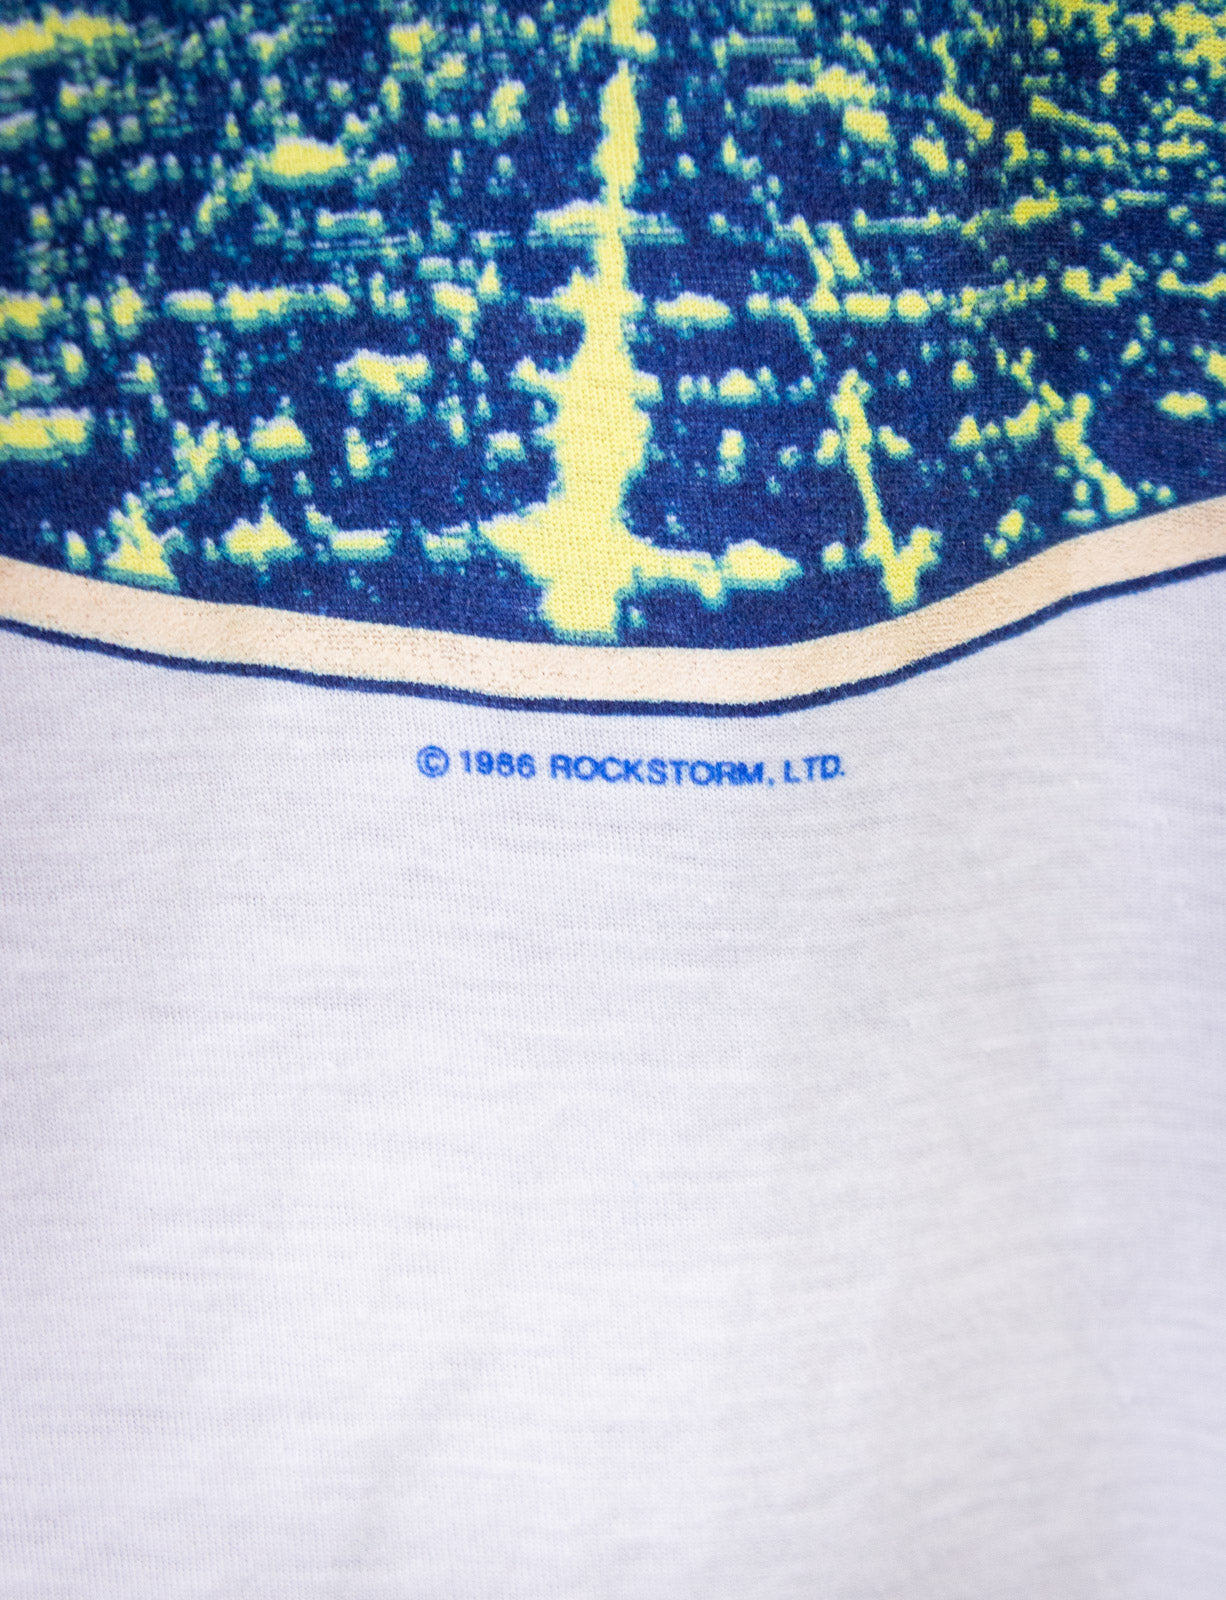 Vintage Bob Seger Rock & Roll Never Forgets Concert T Shirt 1986/87 White Large